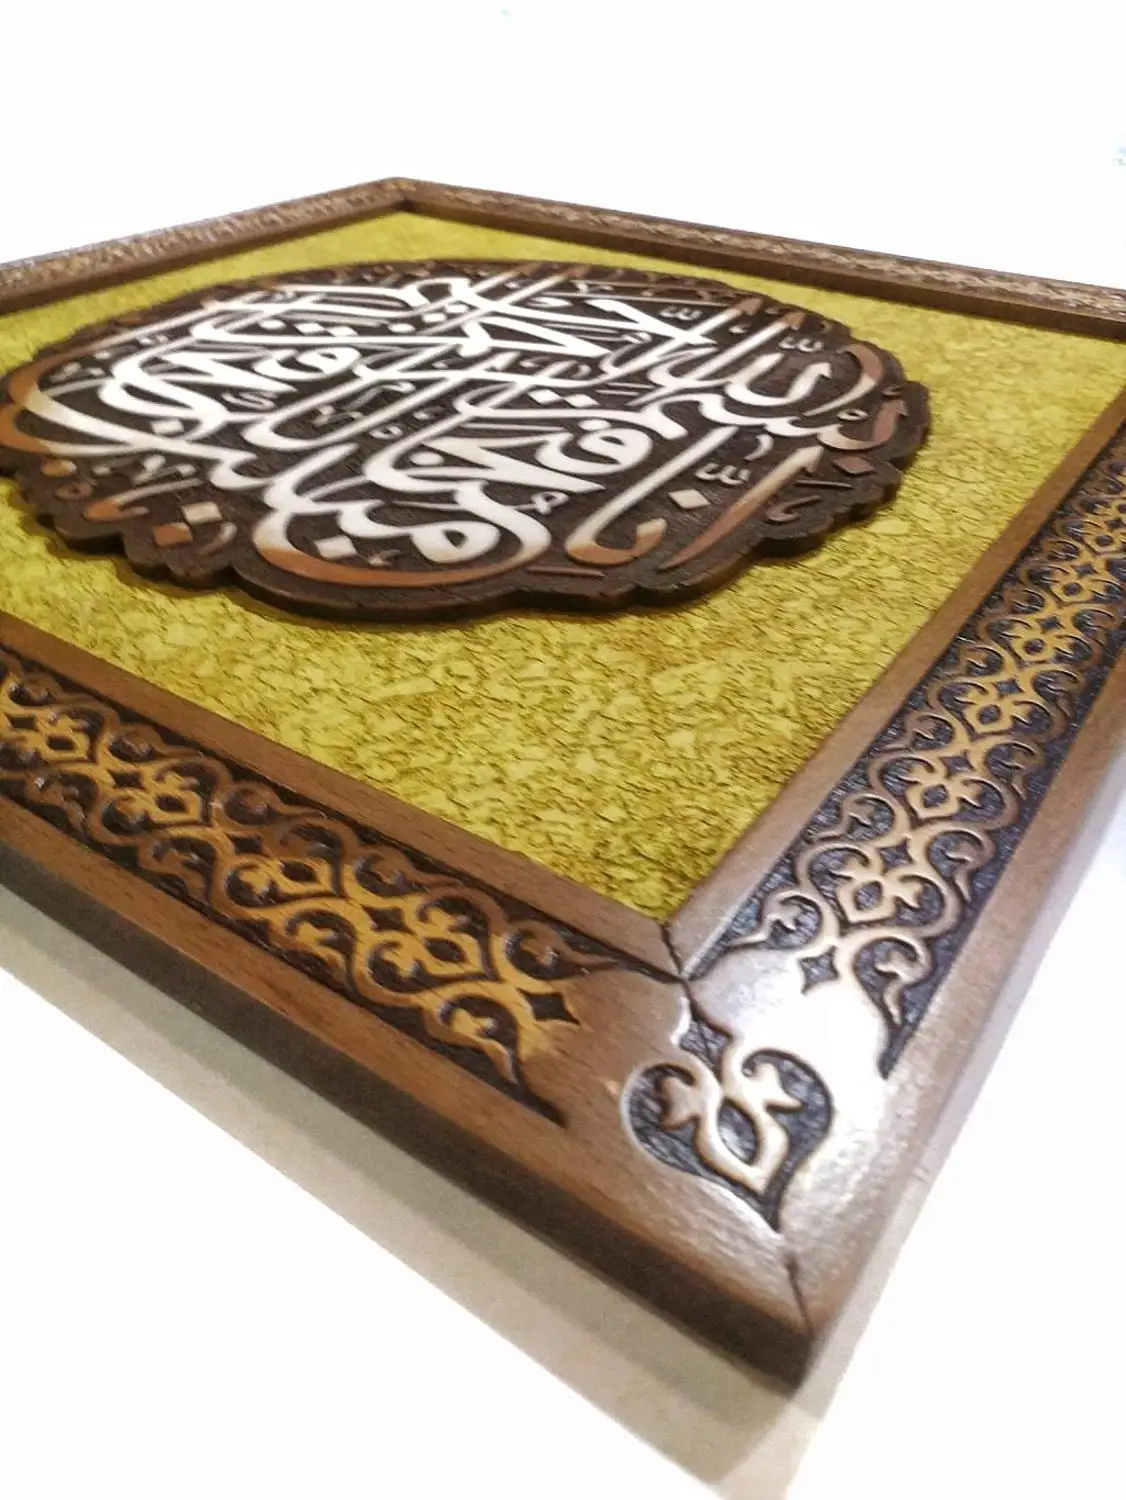 Drevené Rámové feth súra اِنَّا فَتَحْنَا لَكَ فَتْحًا مُب۪ي Islamskej Maľovanie Kaligrafie Dreva Úľavu 40x40 cm Vyrobené v Turecku